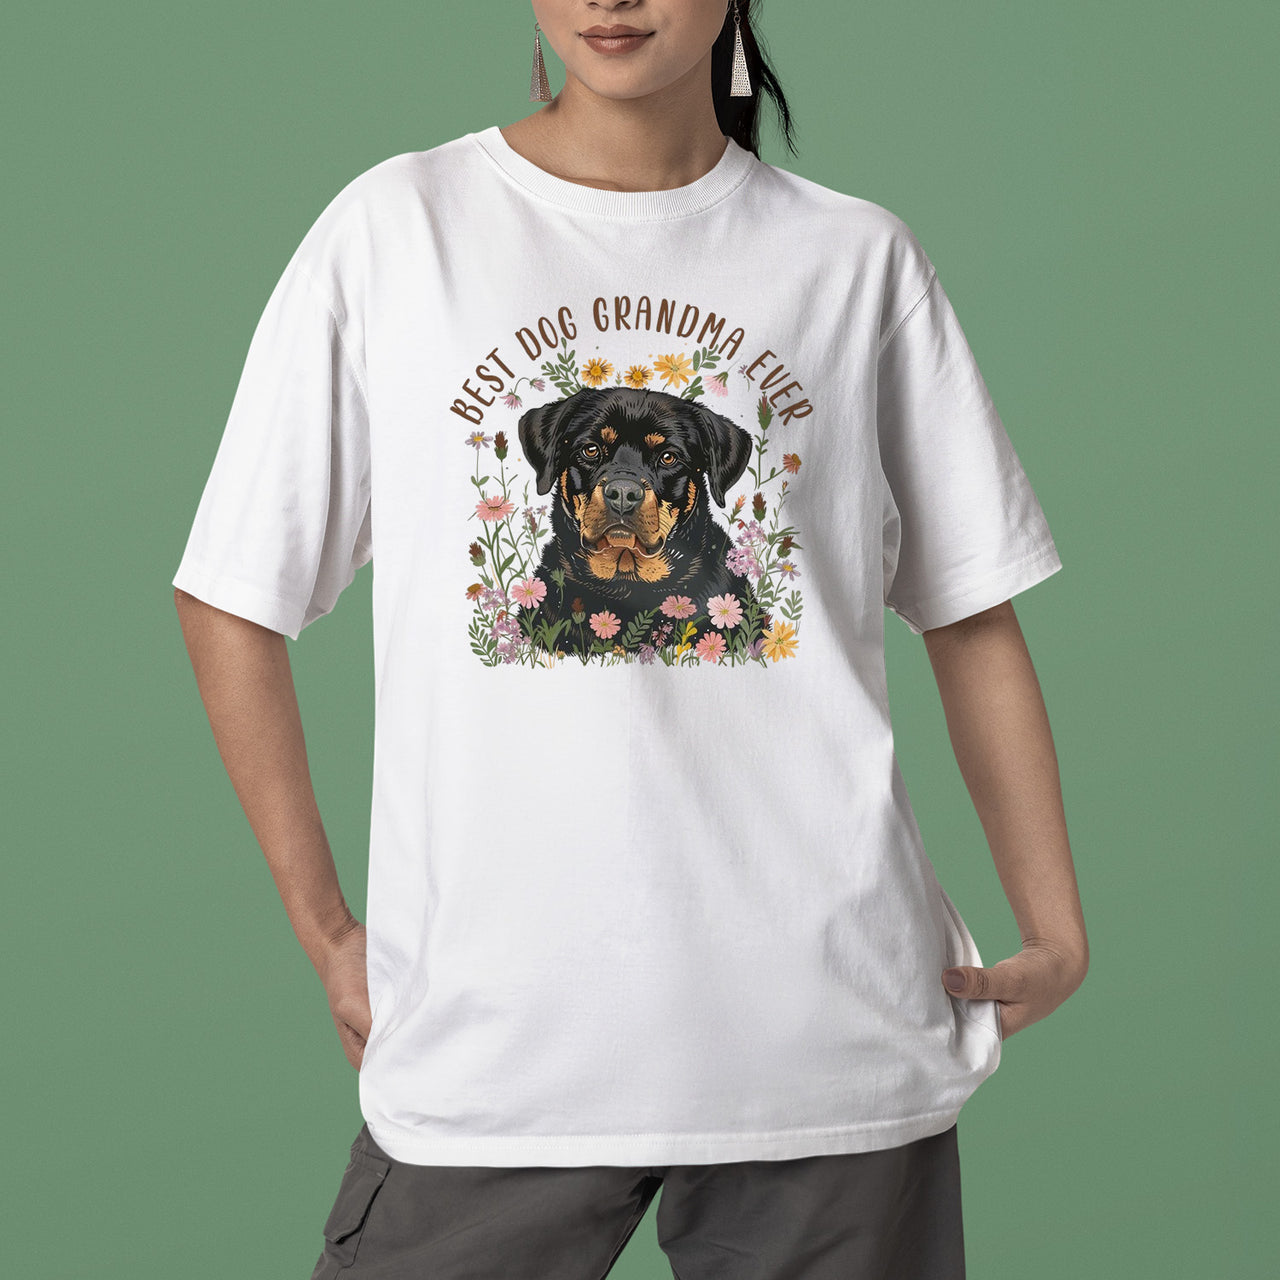 Rottweiler Dog T-shirt, Pet Lover Shirt, Dog Lover Shirt, Best Dog Grandma Ever T-Shirt, Dog Owner Shirt, Gift For Dog Grandma, Funny Dog Shirts, Women Dog T-Shirt, Mother's Day Gift, Dog Lover Wife Gifts, Dog Shirt